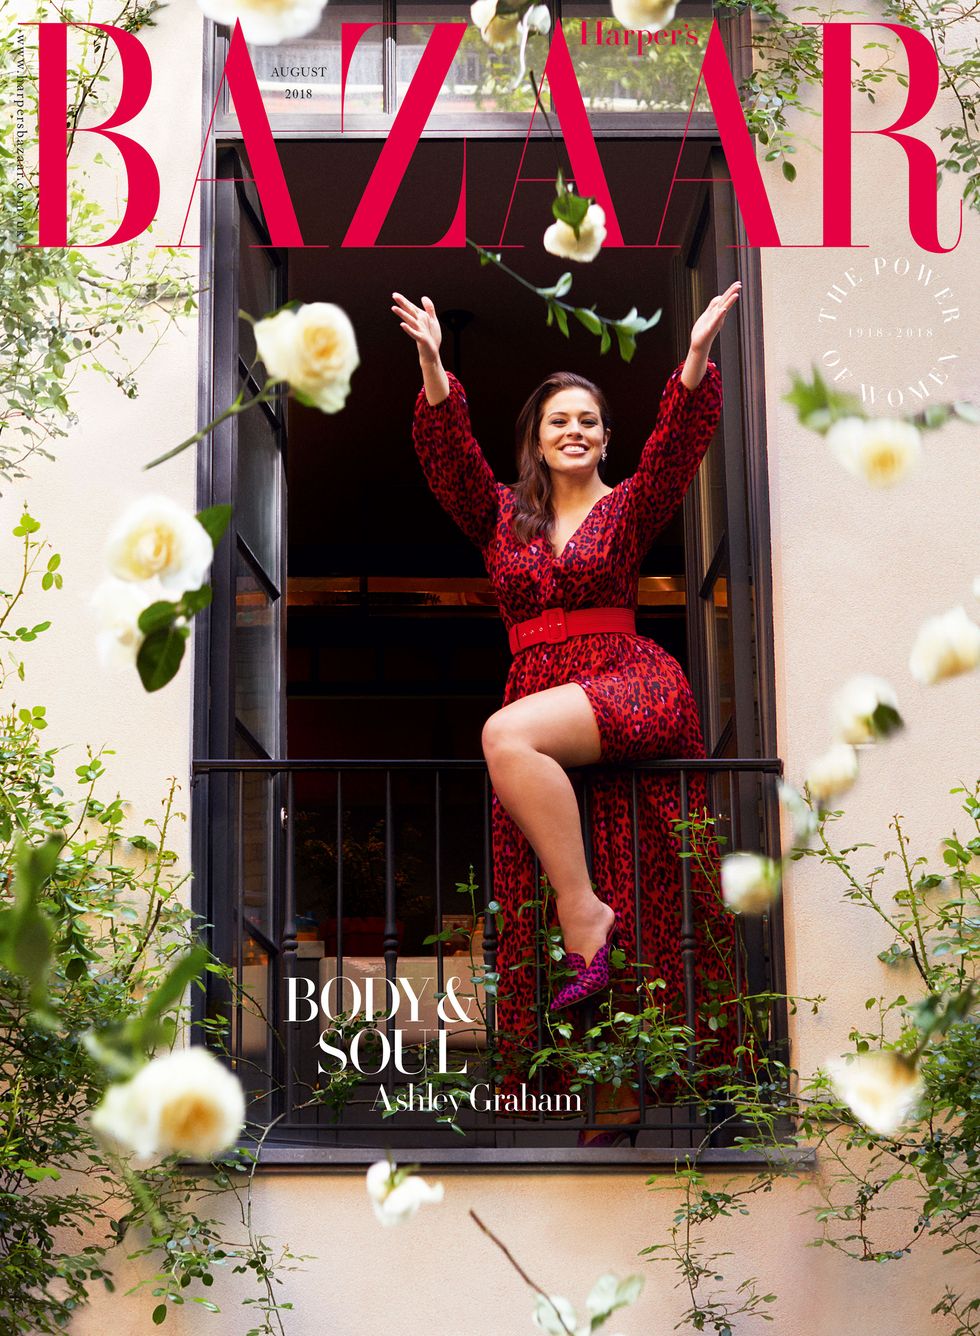 Ashley Graham for Harper's Bazaar August 2018